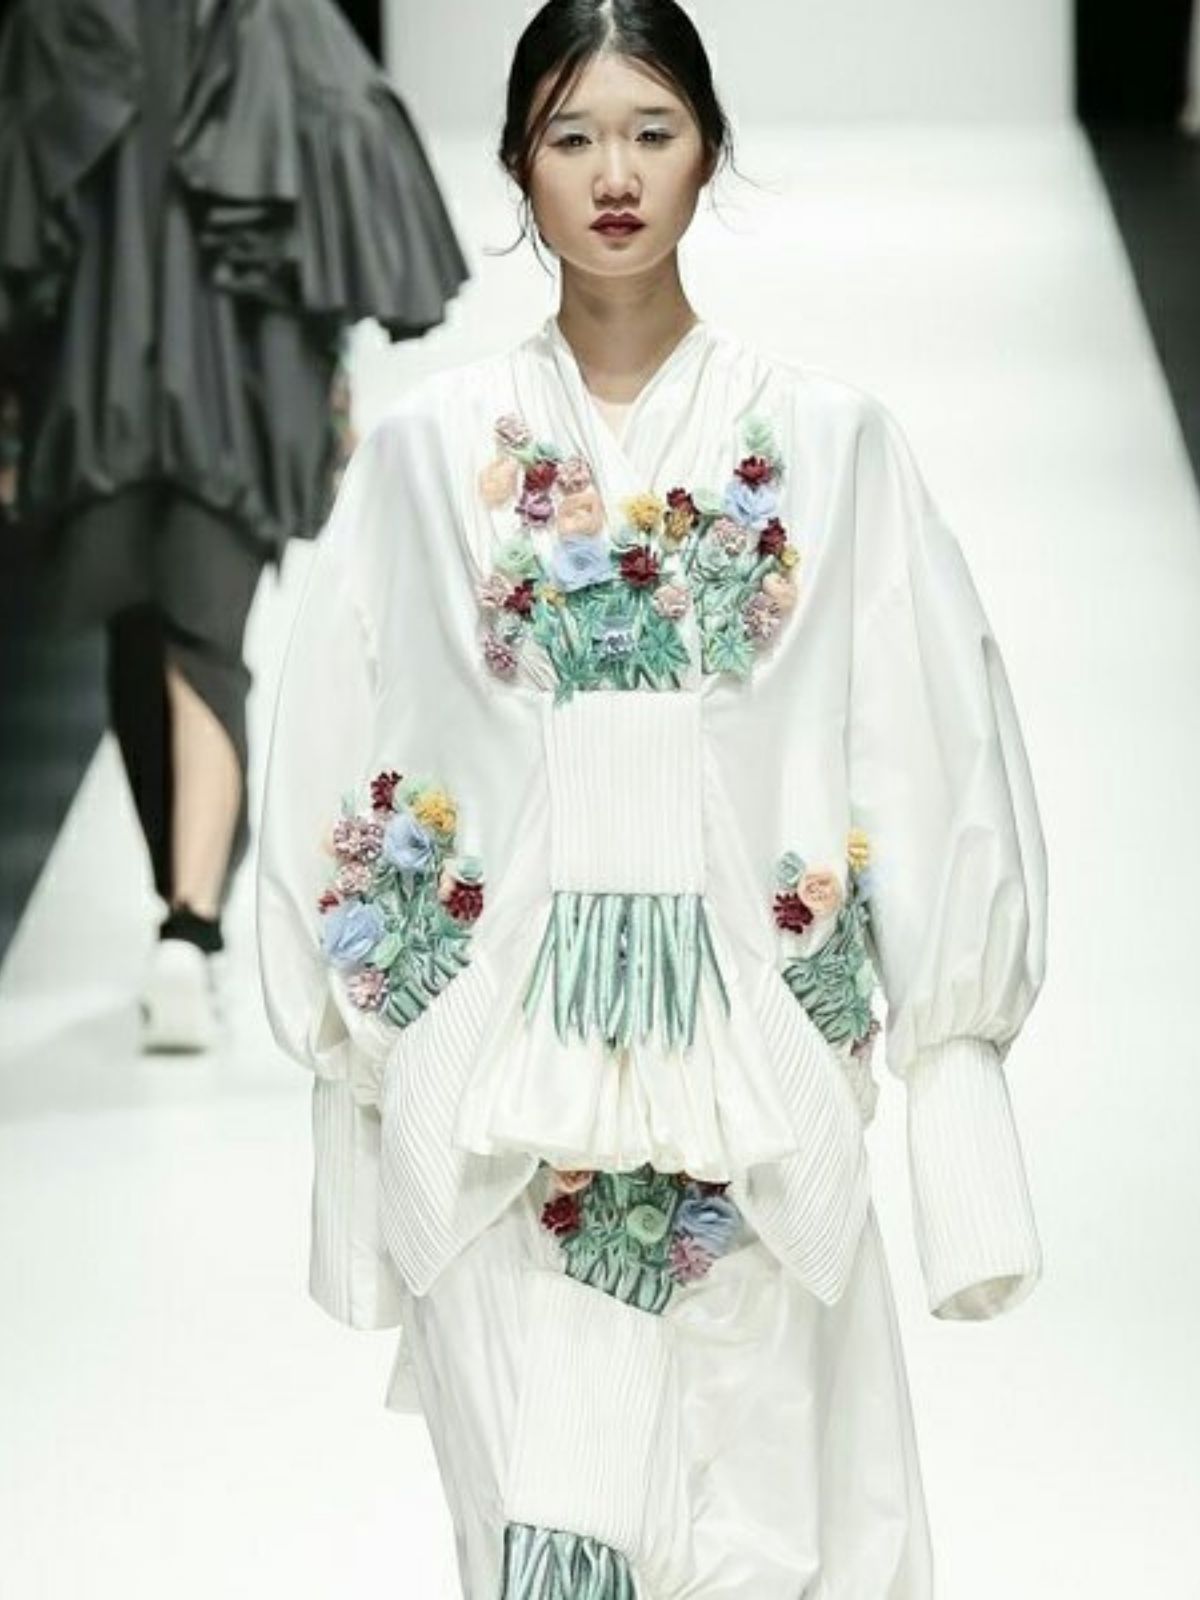 nguyen floral dress on the catwalk - on thursd